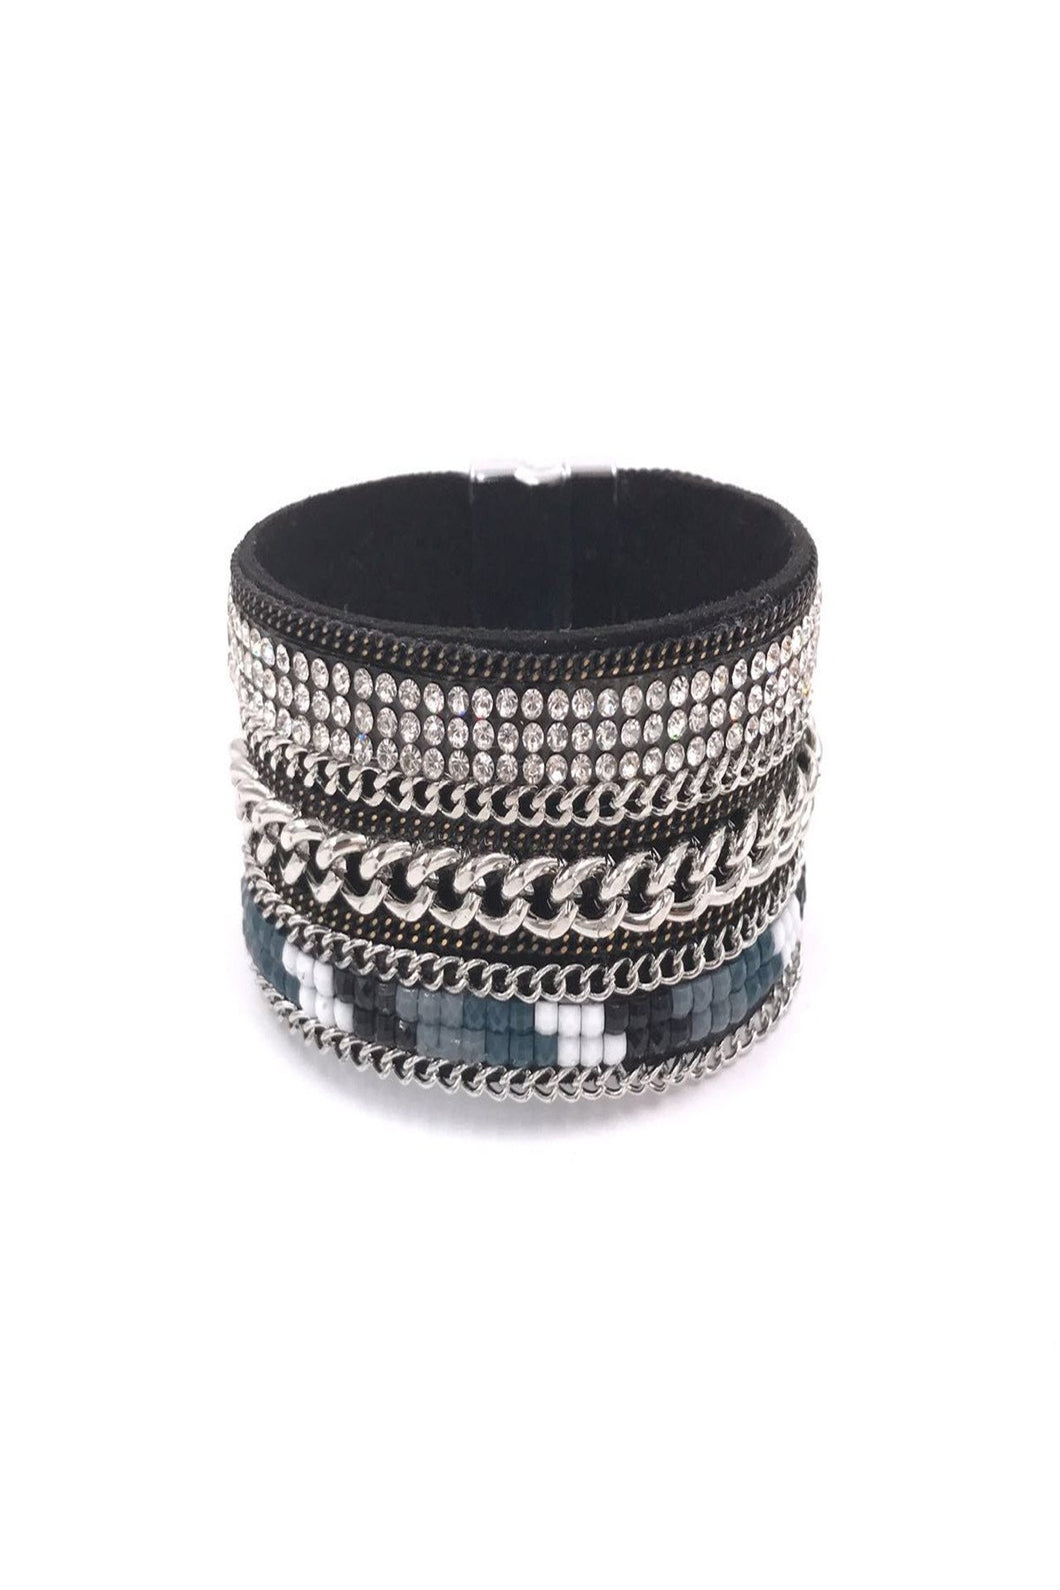 Bracelet manchette large orné de différente chaine et de strass avec fermeture aimanté.